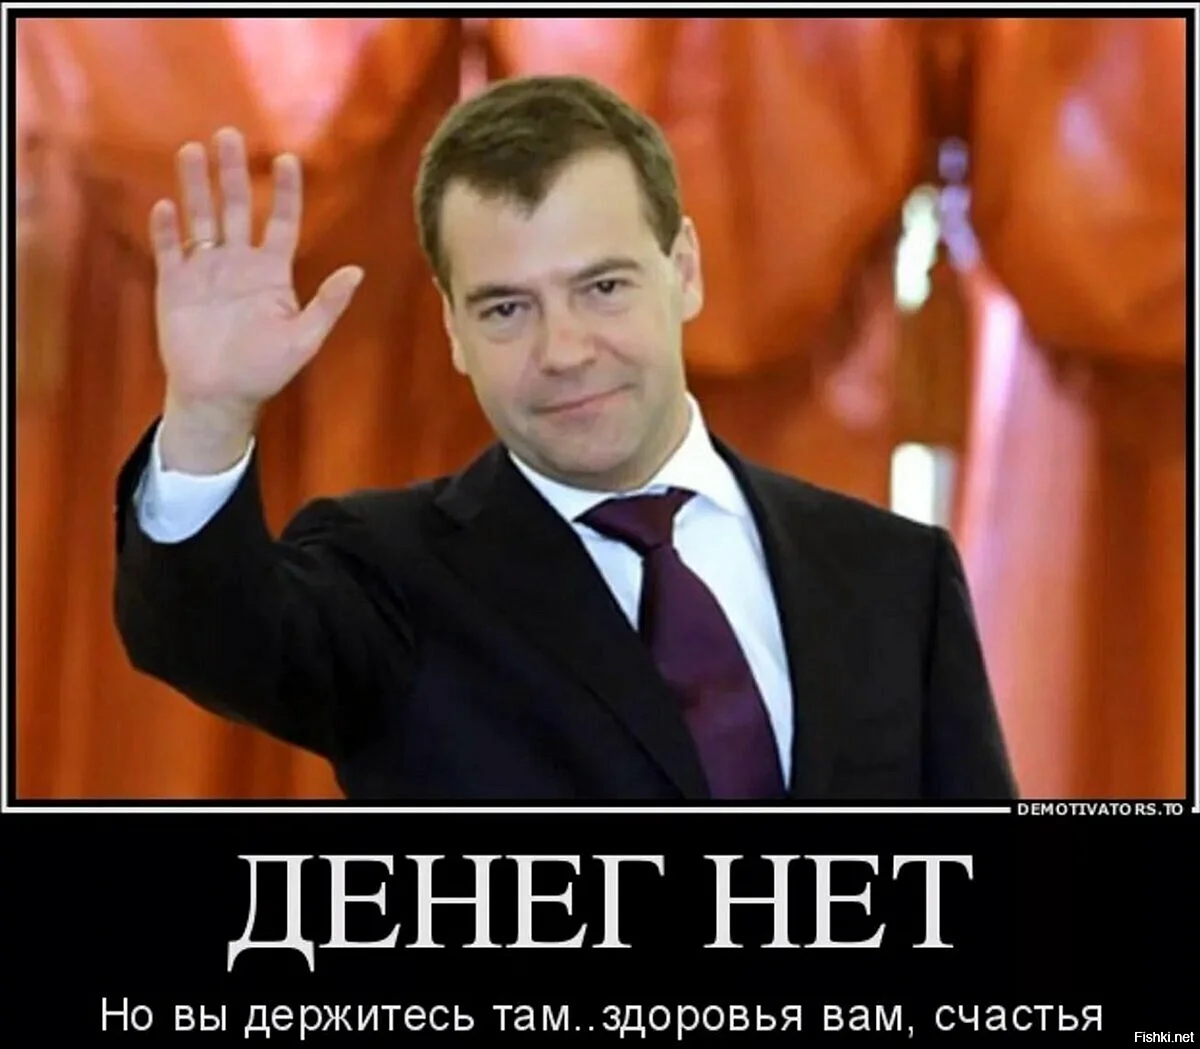 Дмитрий Медведев машет